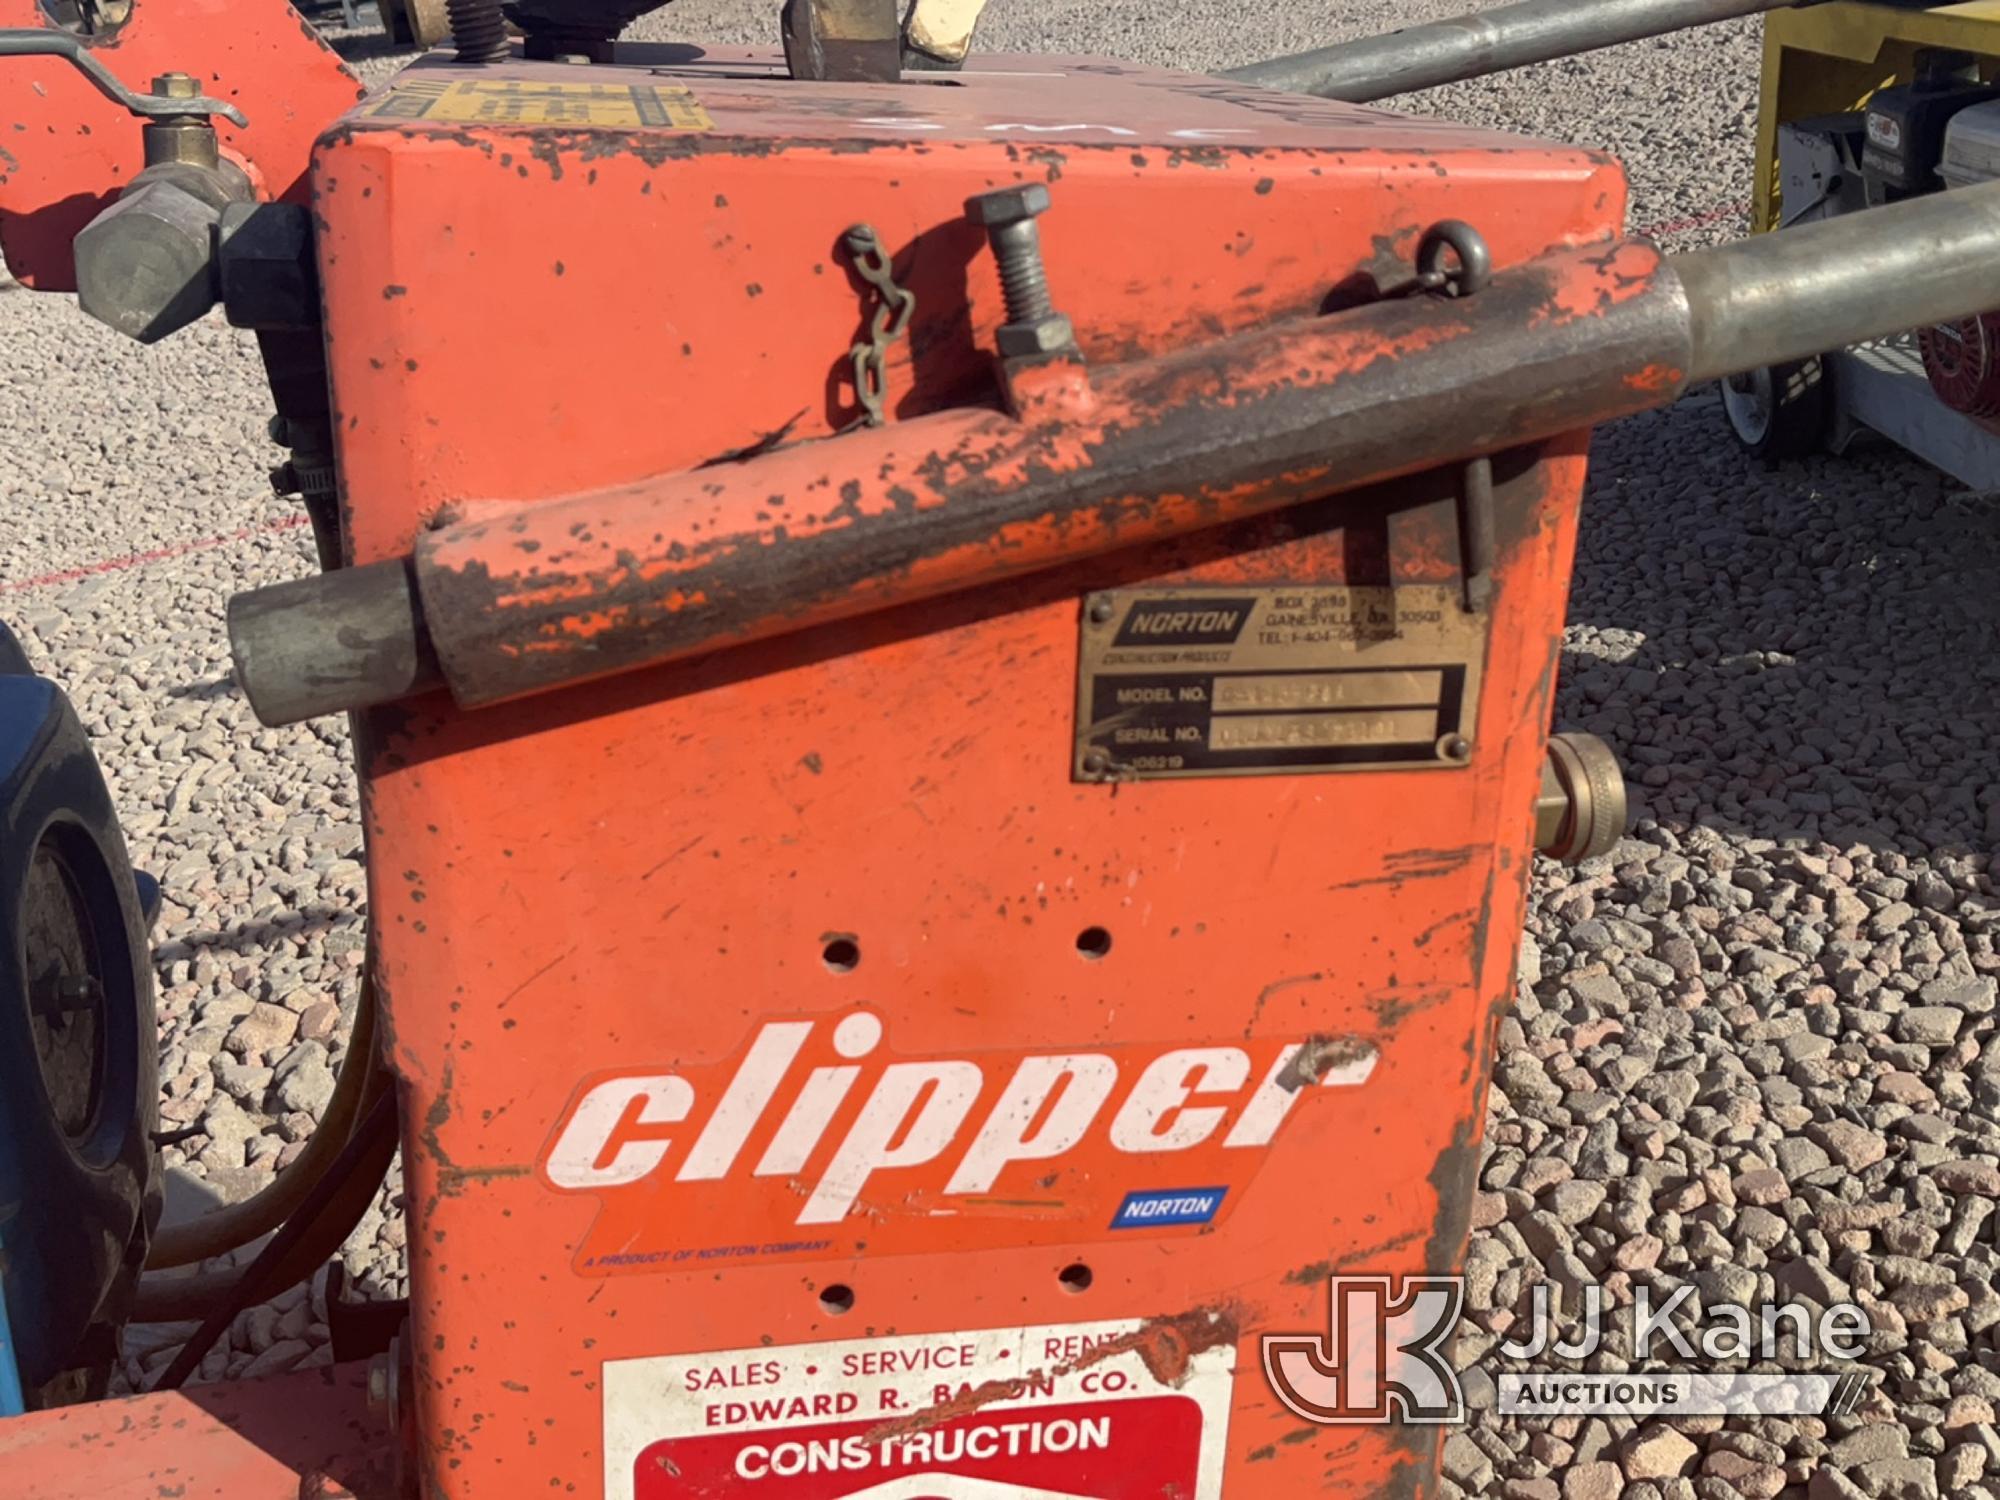 (Dixon, CA) Norton Clipper Norton Clipper Concrete Saw, Model C 143 GAA Does Not Start & Conditions